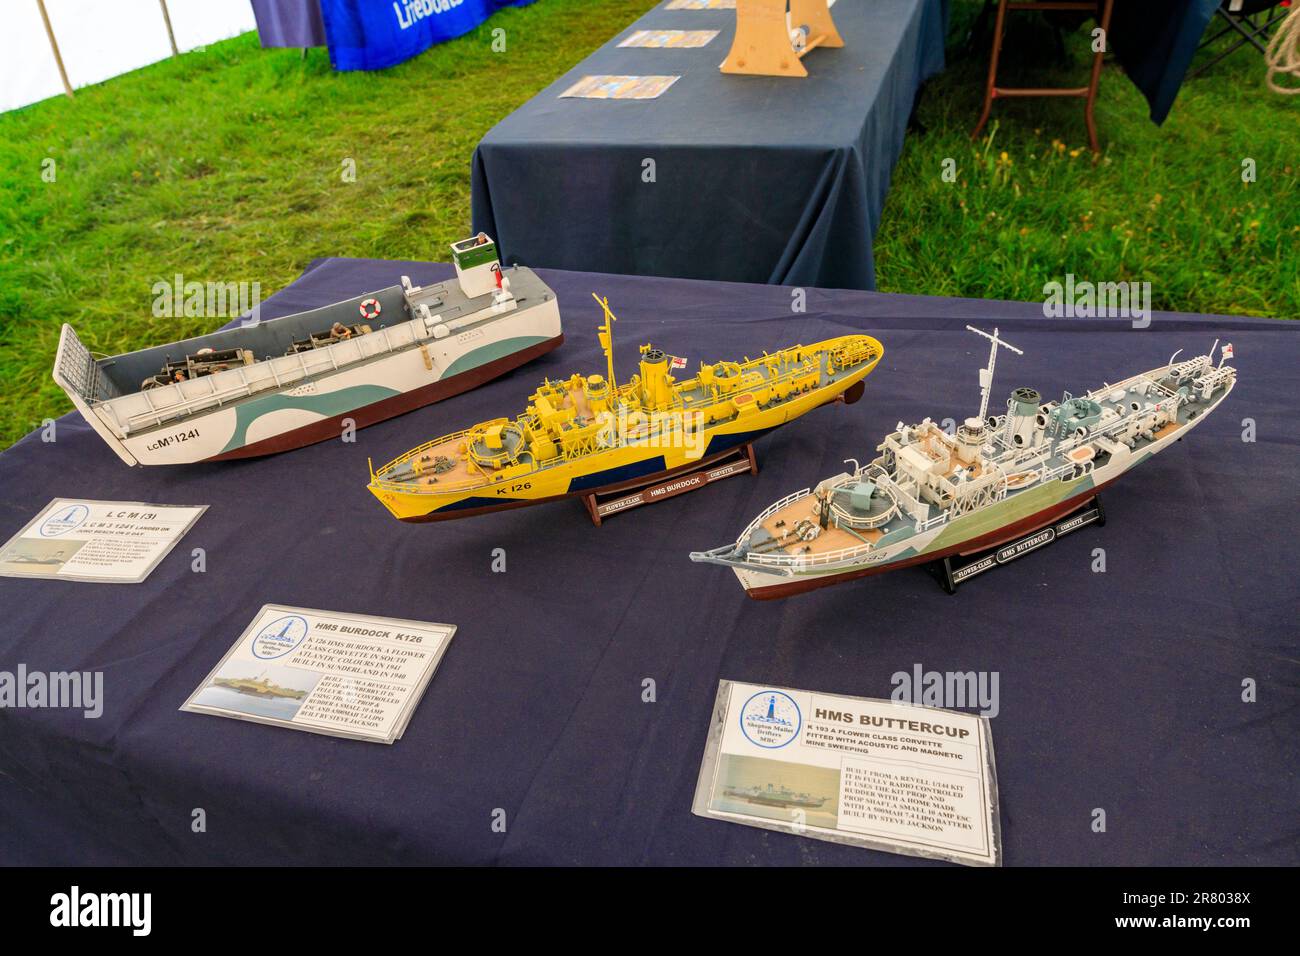 Eine Ausstellung von Militärschiffen, die aus Plastikausrüstung gebaut wurden, bei der Abbey Hill Steam Rally, Yeovil, Somerset, England, Großbritannien Stockfoto